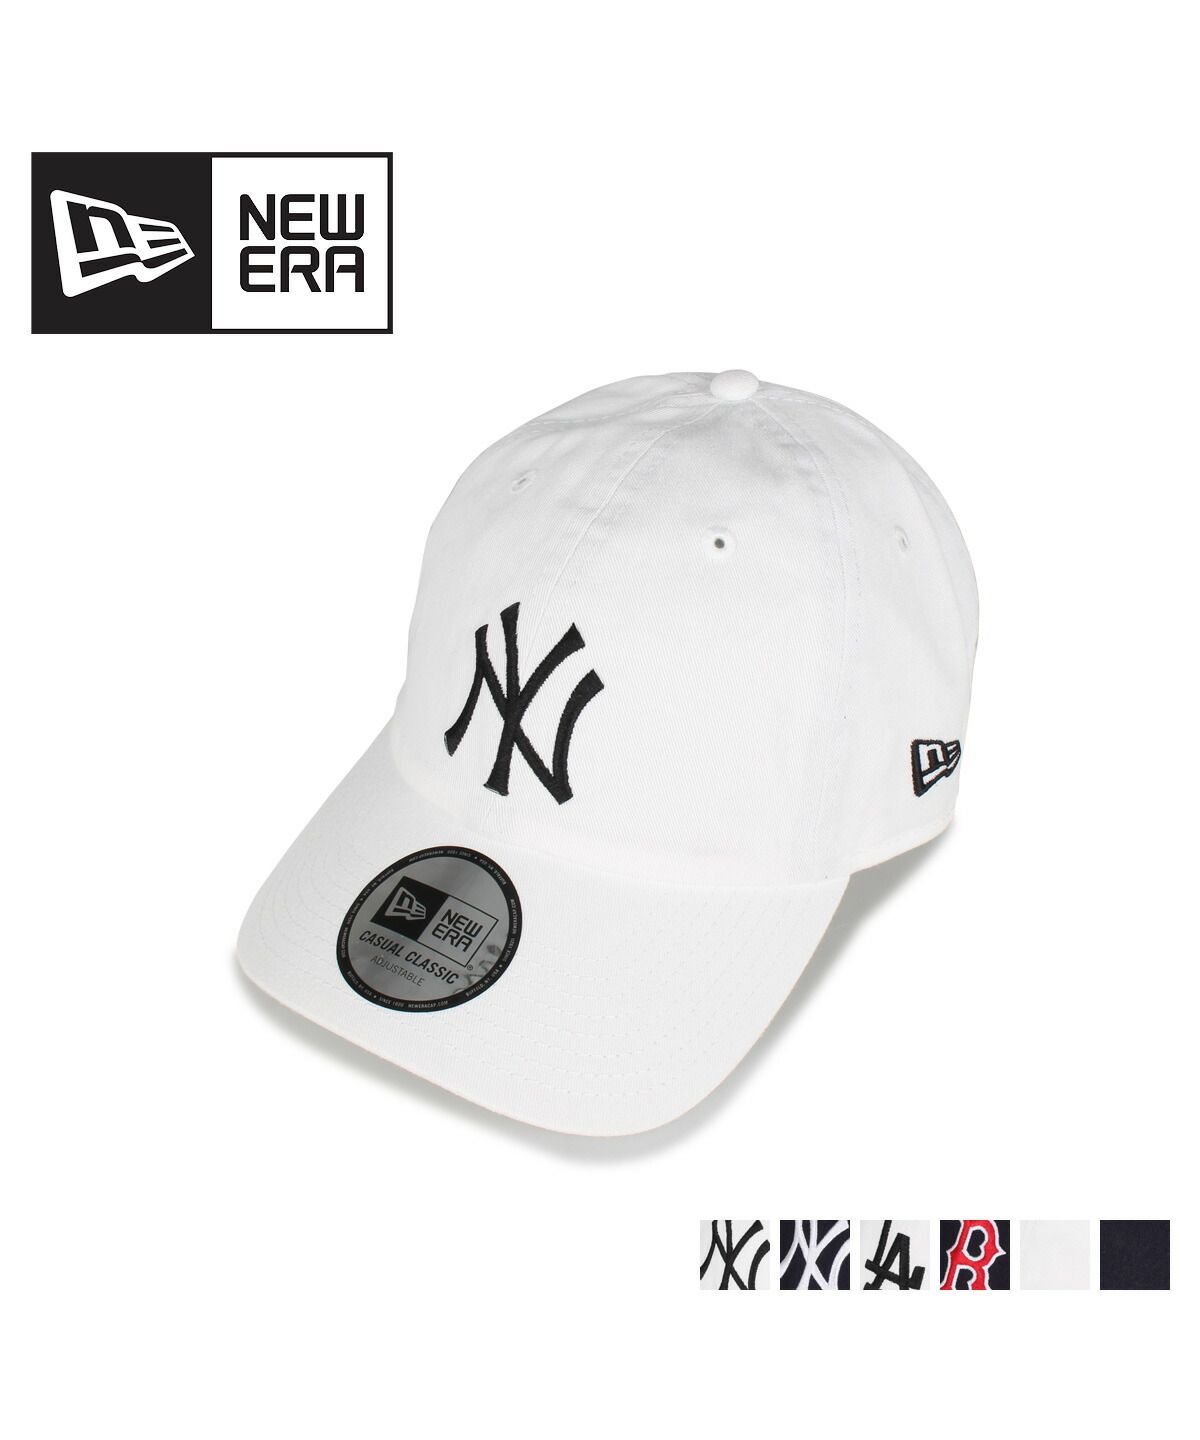 ニューエラ NEW ERA キャップ 帽子 メンズ レディース CASUAL CLASSIC ホワイト ネイビー 白